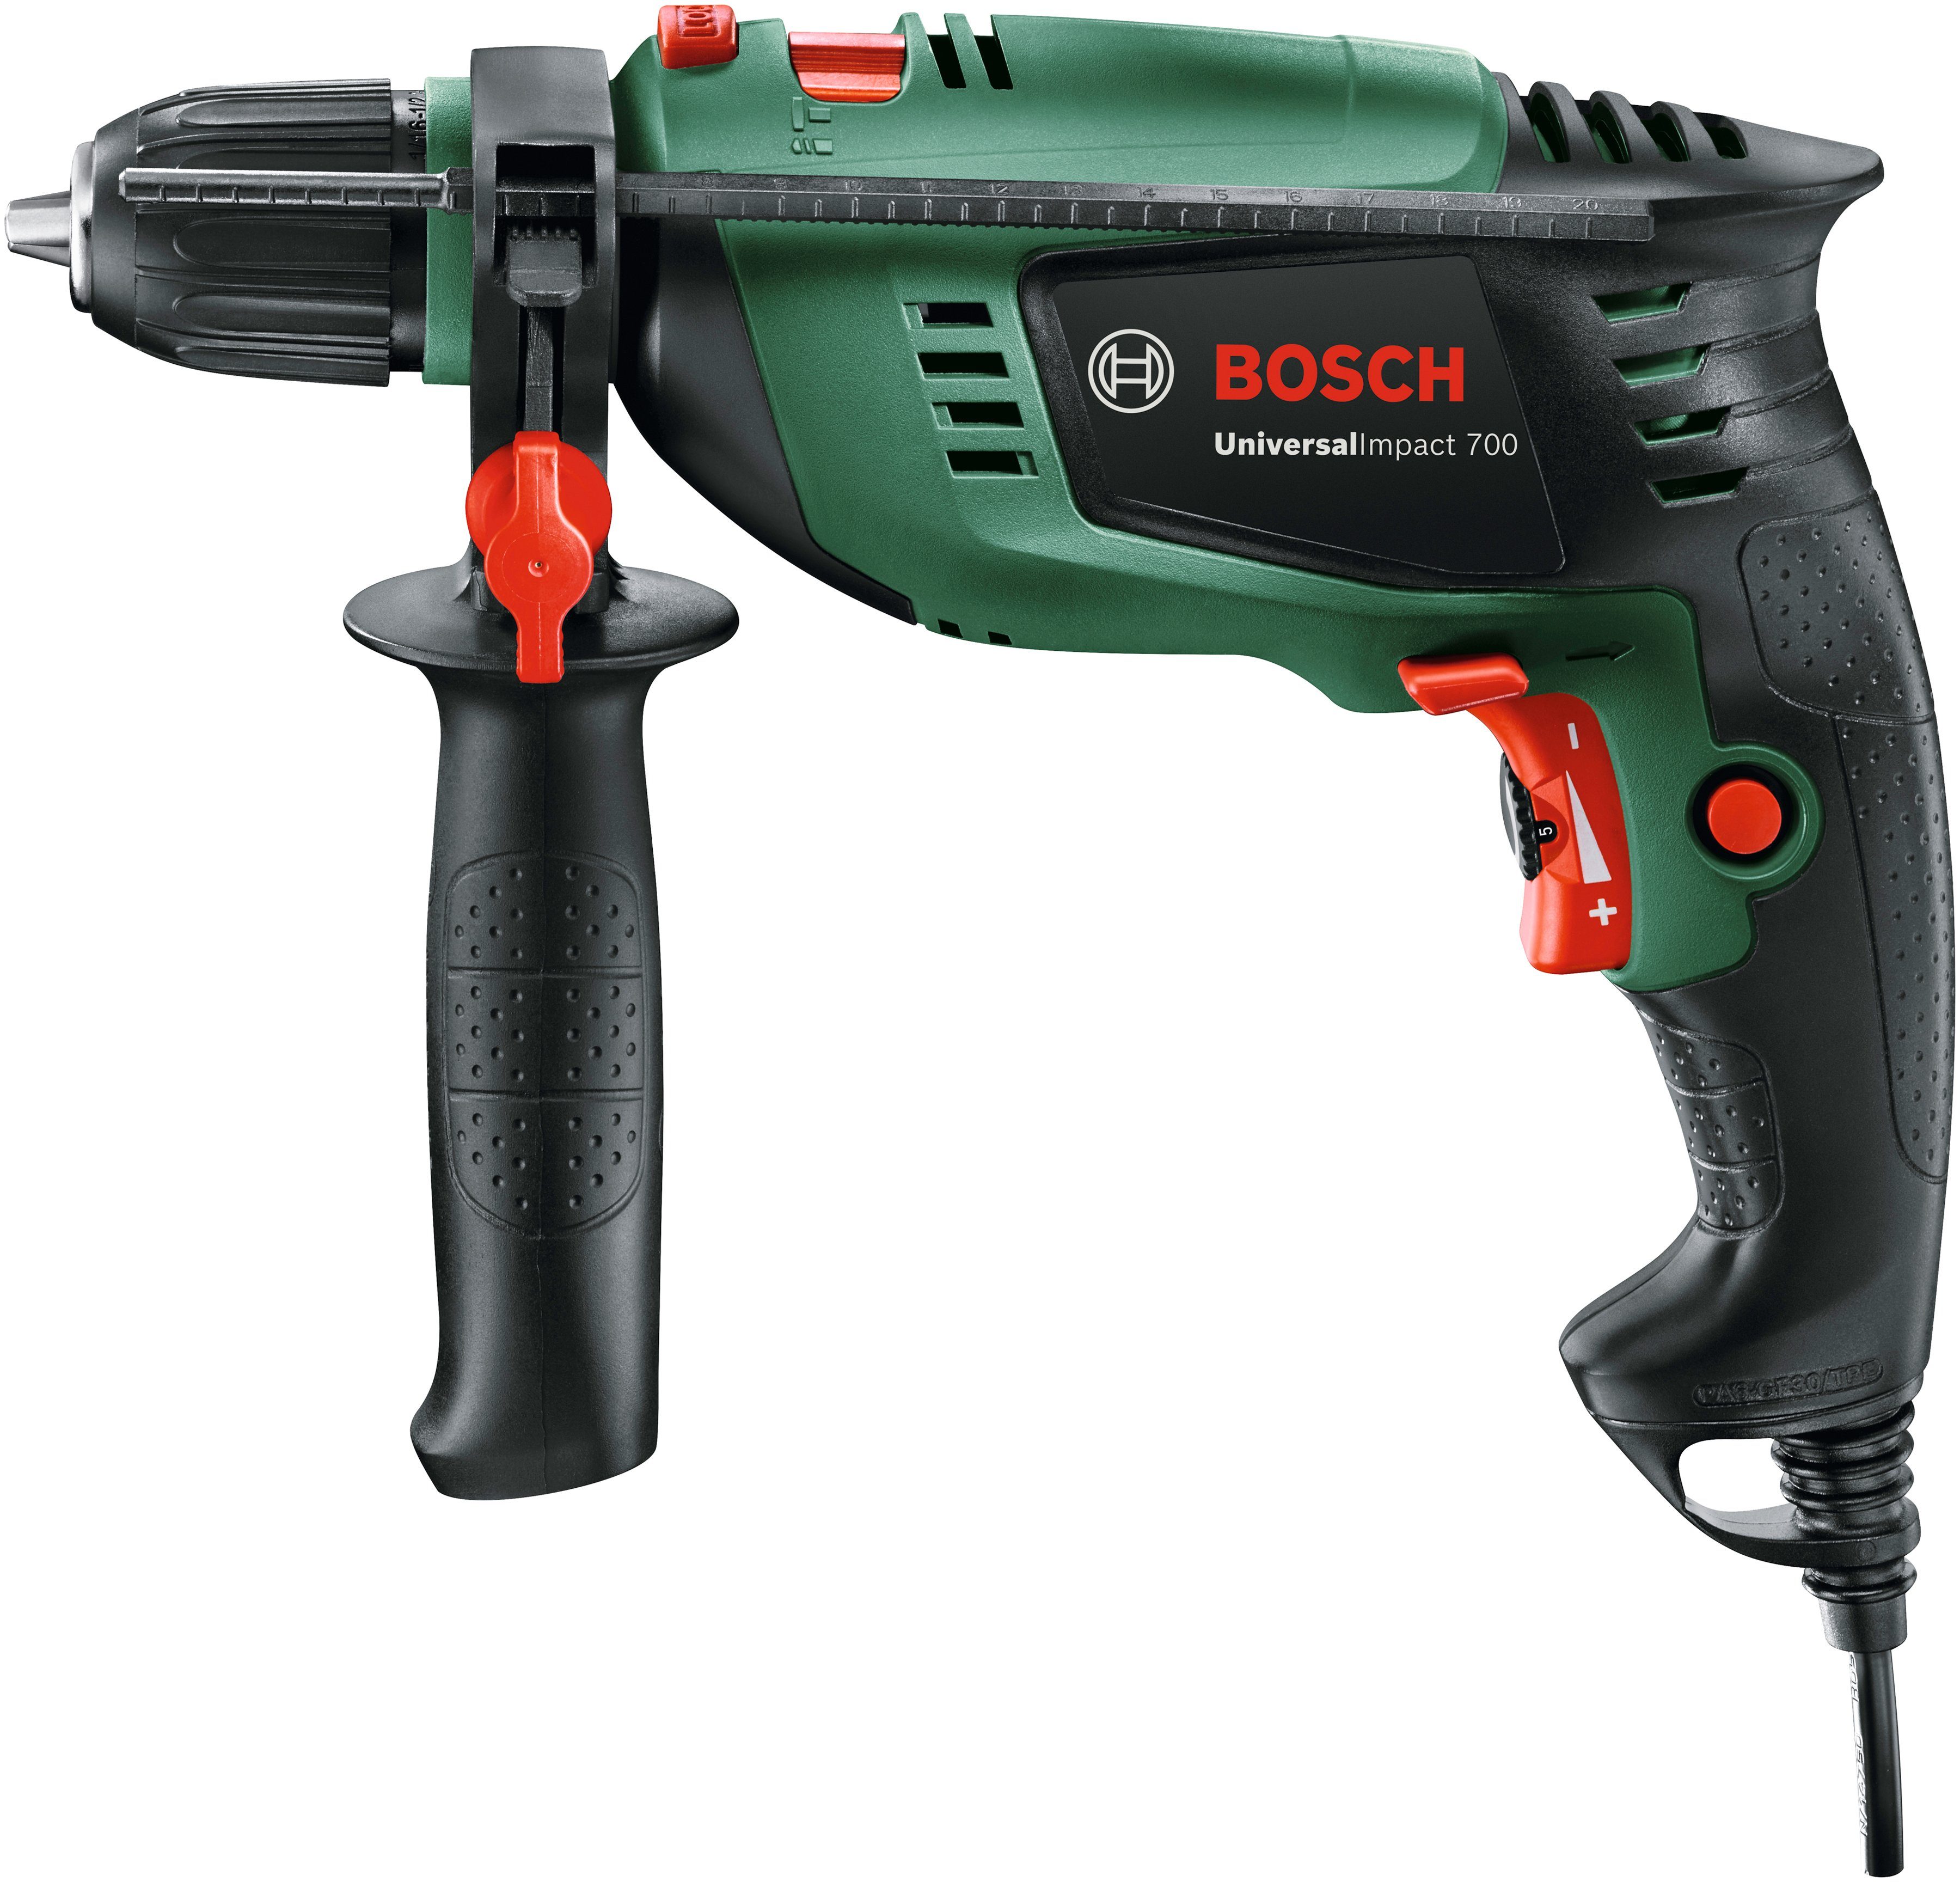 Bosch Home & Garden Schlagbohrmaschine U/min 3000 max. 700, UniversalImpact